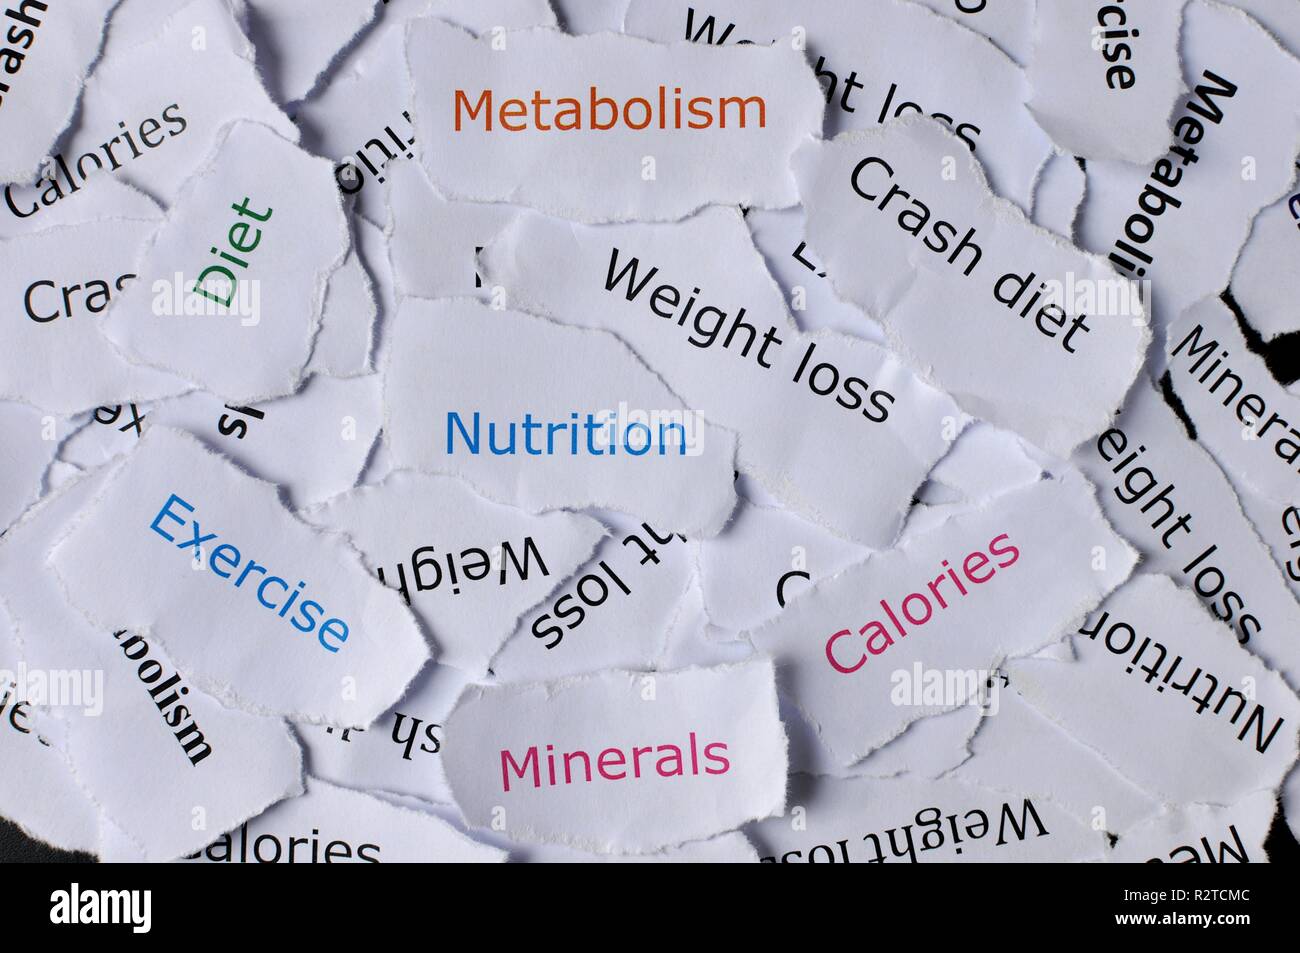 Konzept der zufälligen Papiere mit Worten, Ernährung, Diät, übung, Mineralien, crash Diät gedruckt, Stoffwechsel Stockfoto